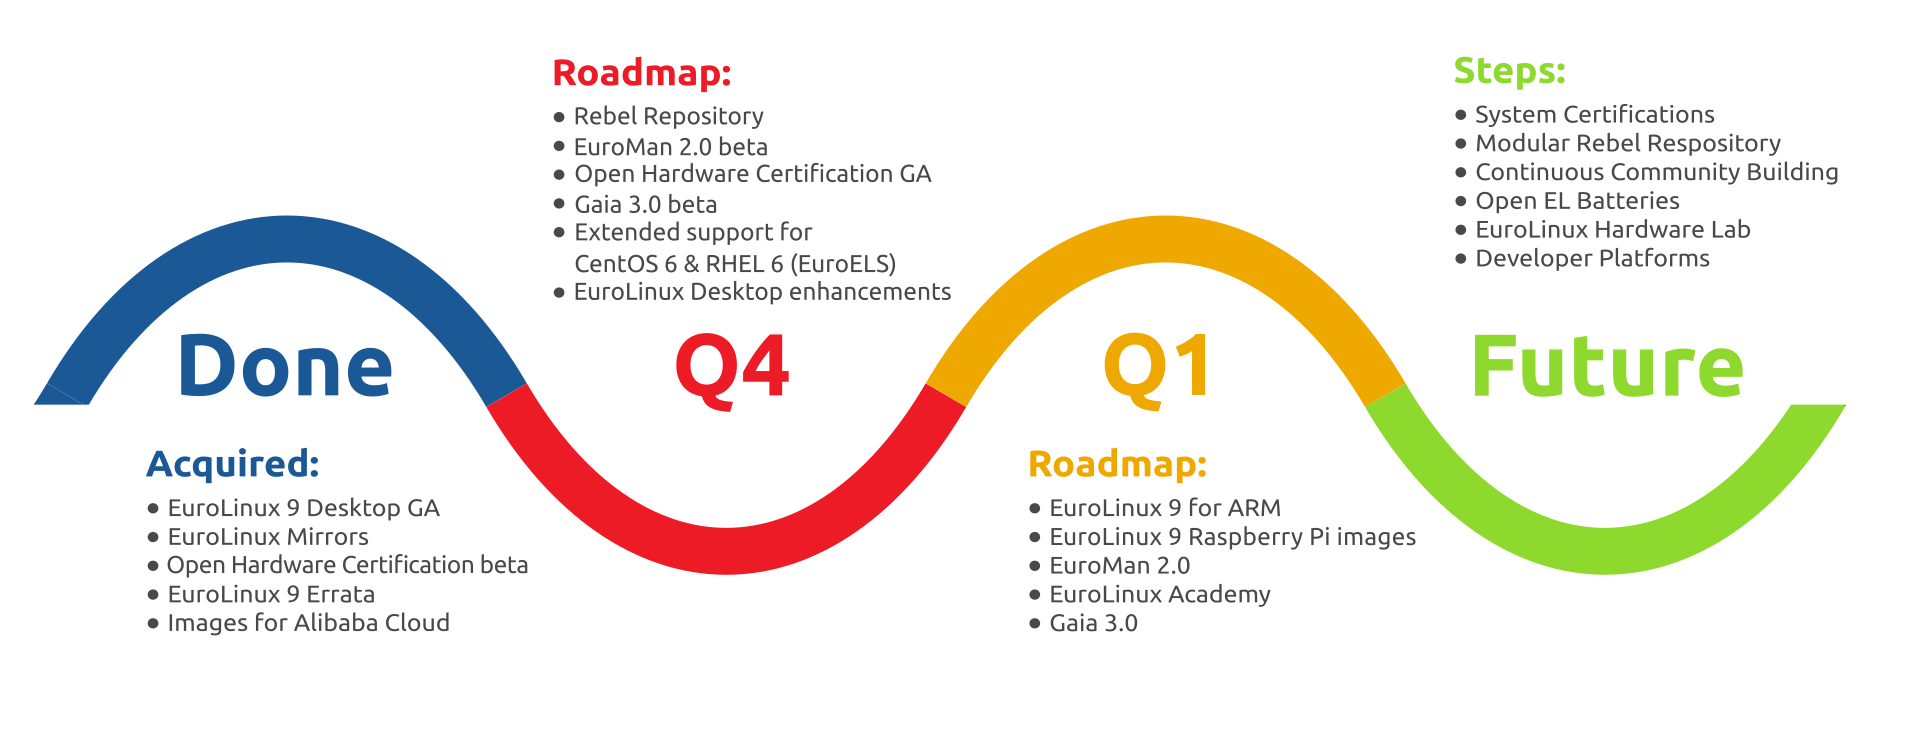 EuroLinux roadmap